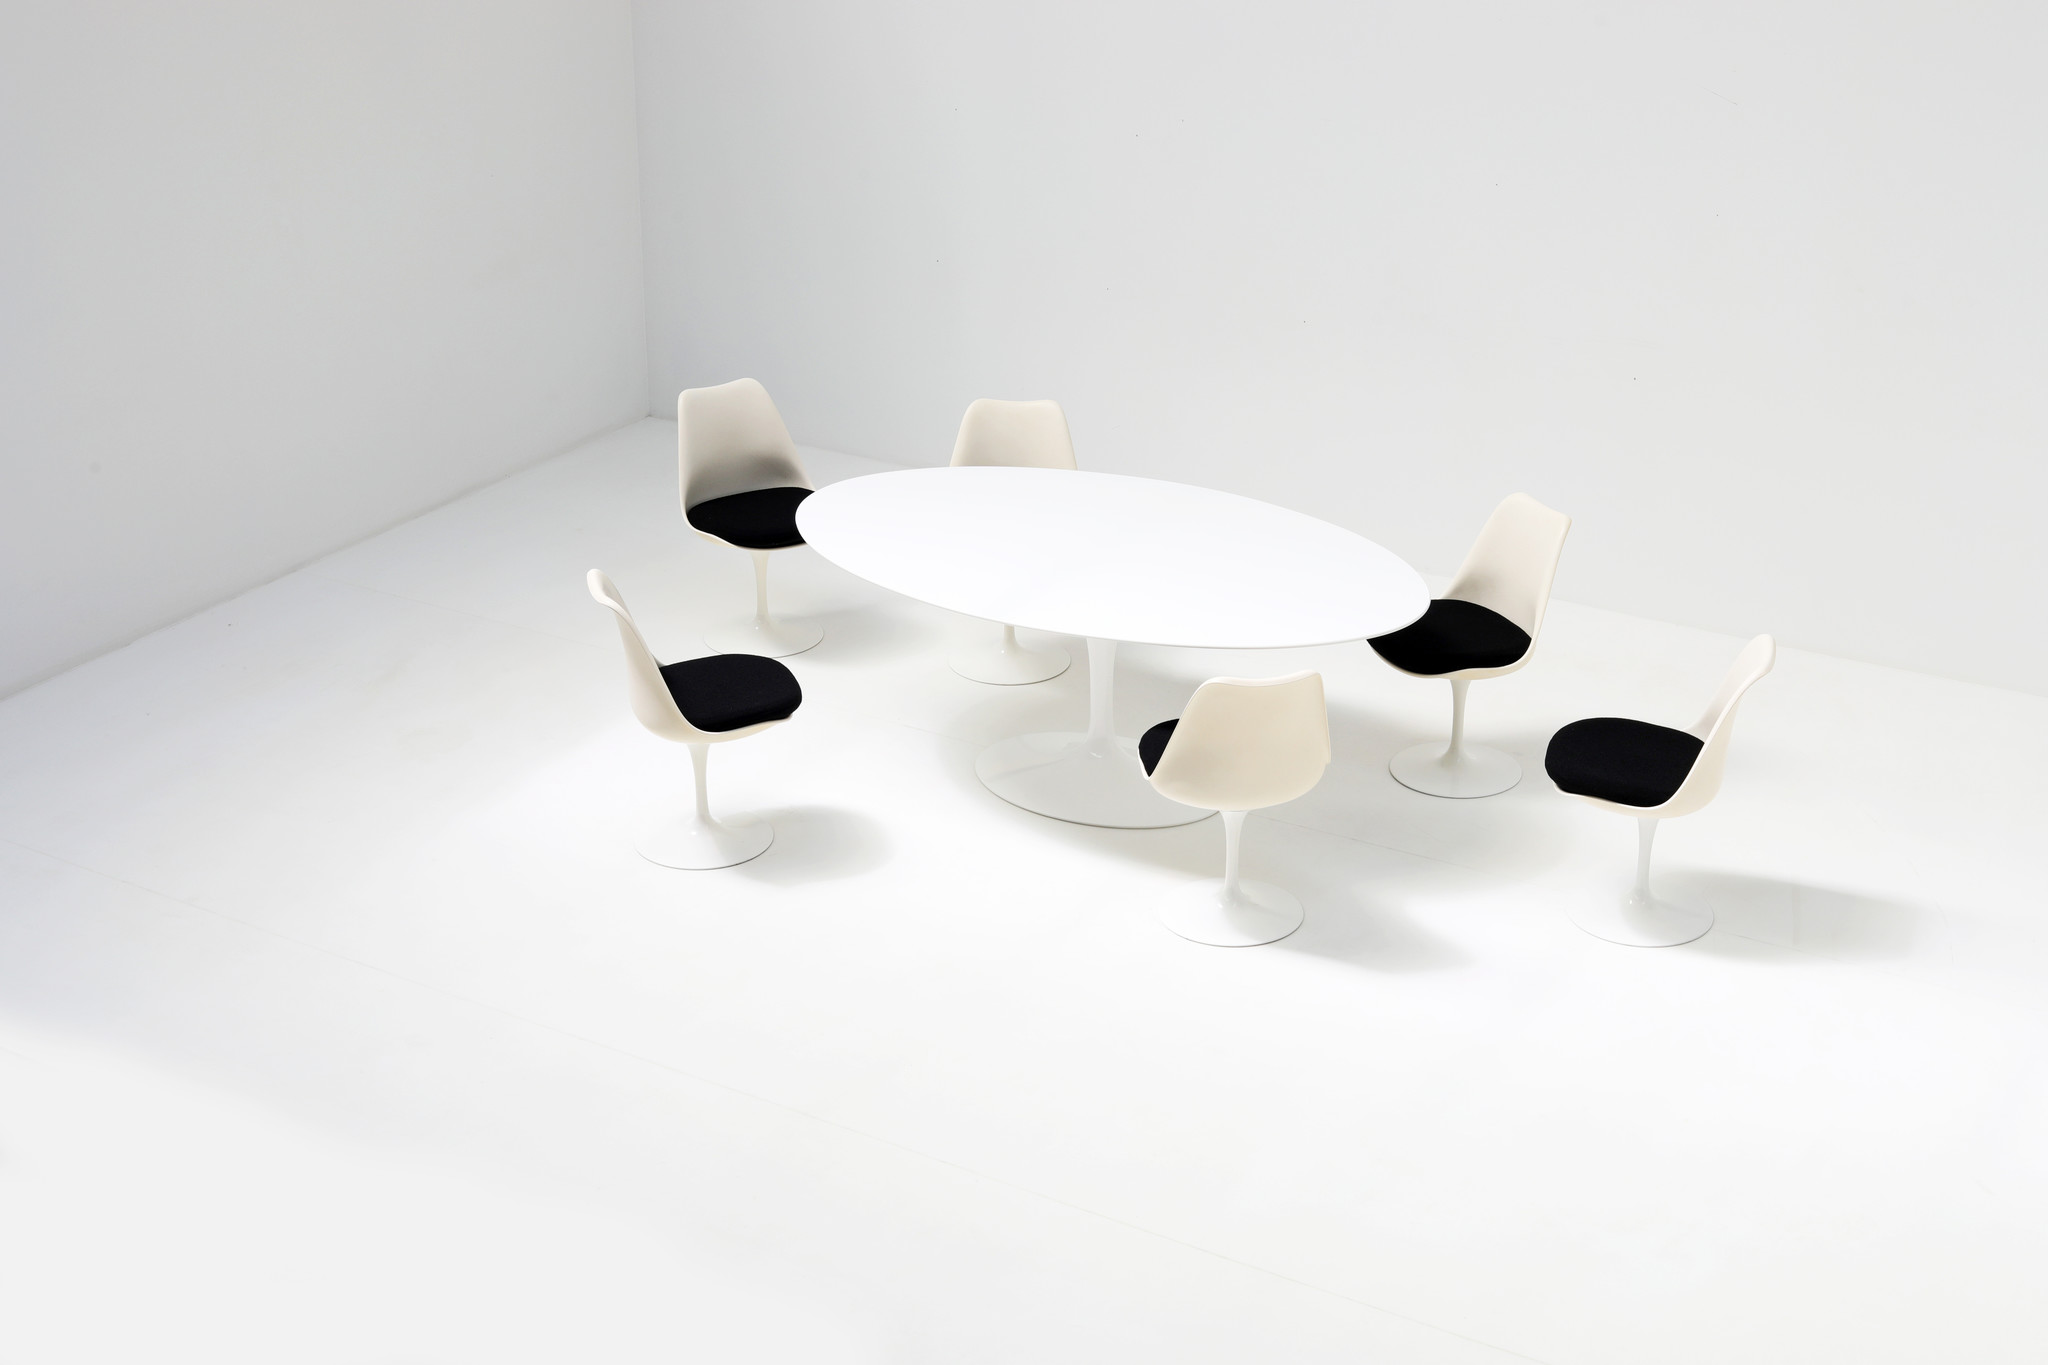 Eero Saarinen oval tulip dining table for Knoll